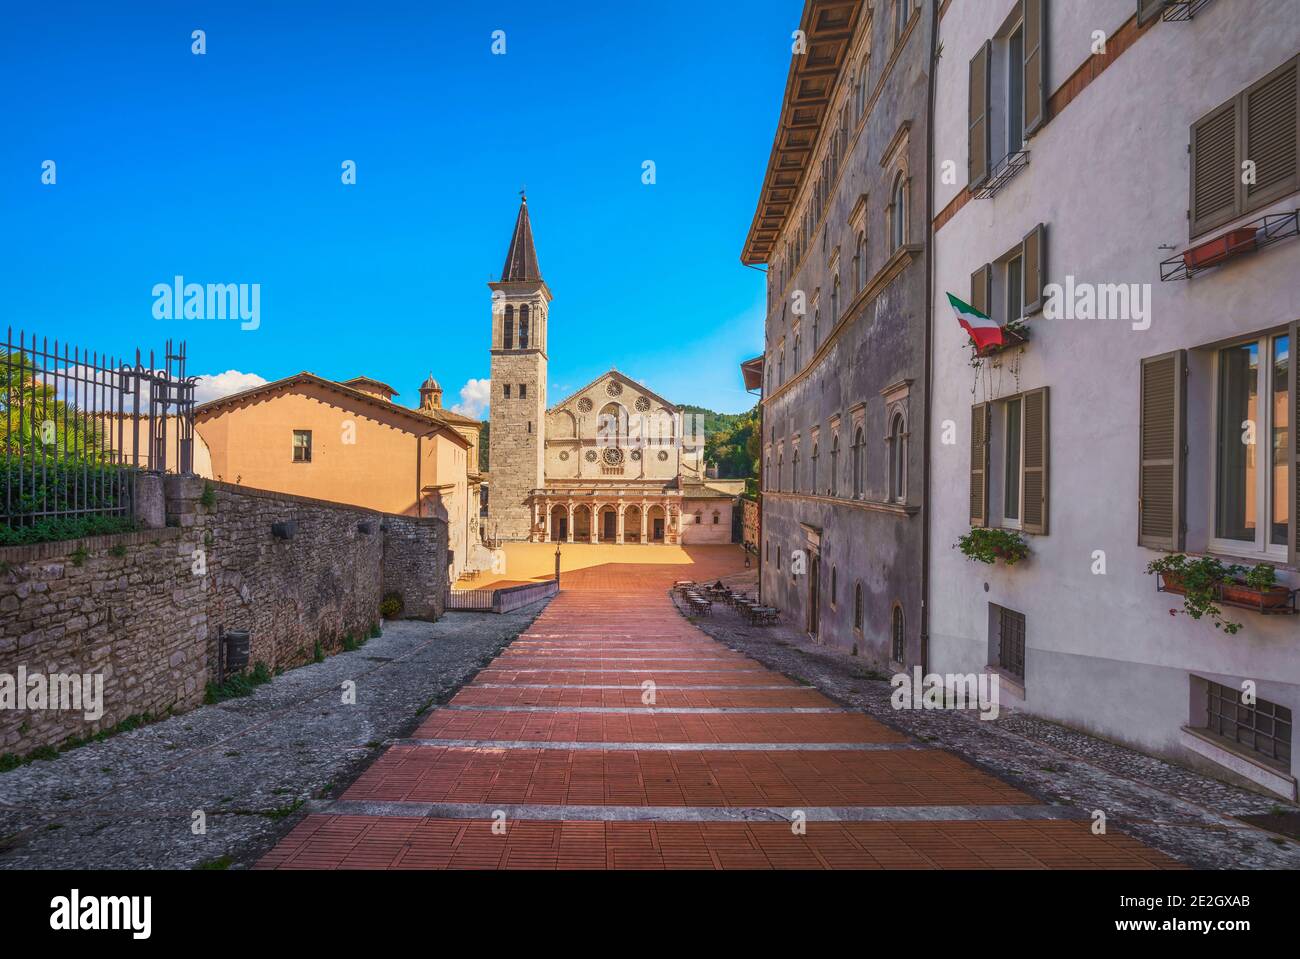 Spoleto, Santa Maria Assunta or Saint Mary duomo cathedral. Perugia, Umbria, Italy, Europe. Stock Photo